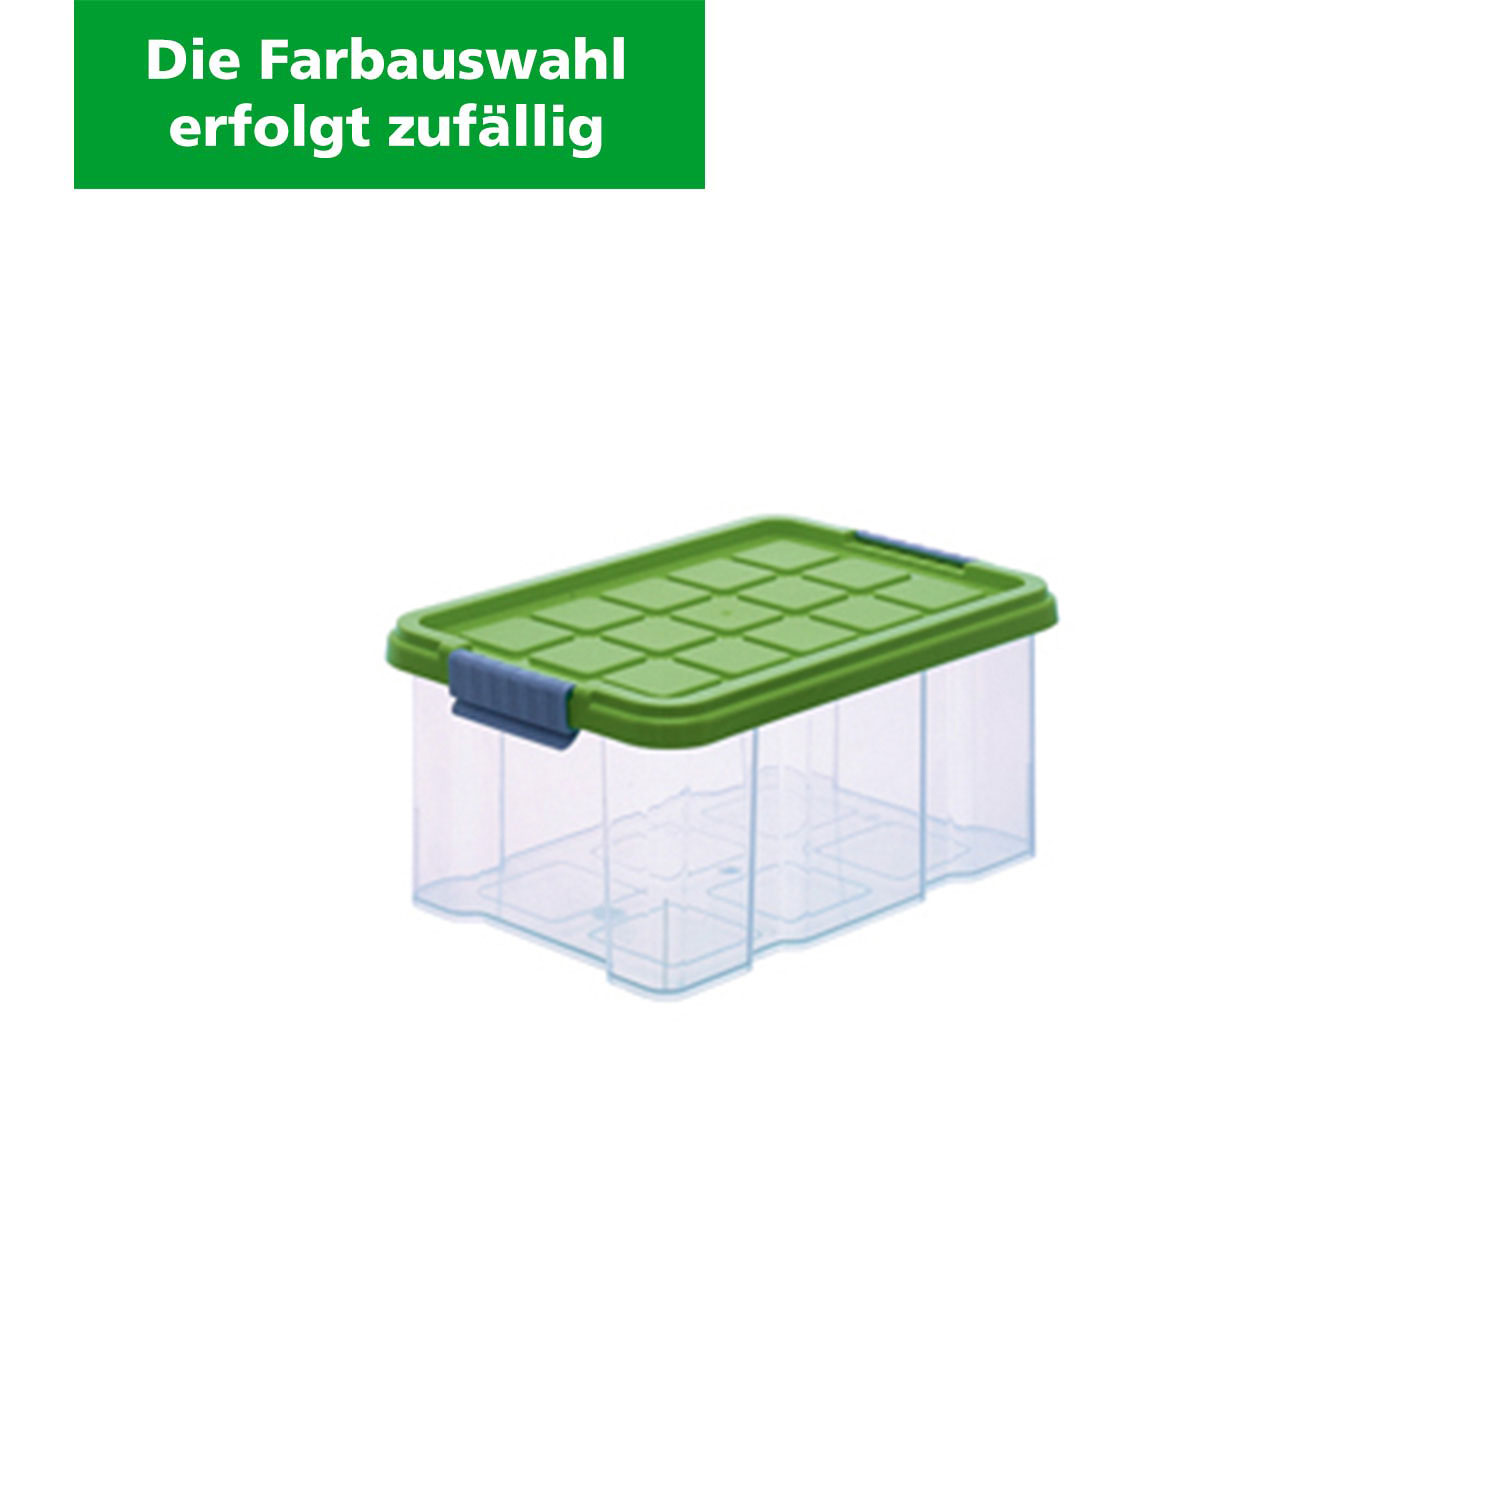 Aufbewahrungsbox "Eurobox" 5 L , Kunststoffbox (Die Farbauswahl erfolgt zufällig)